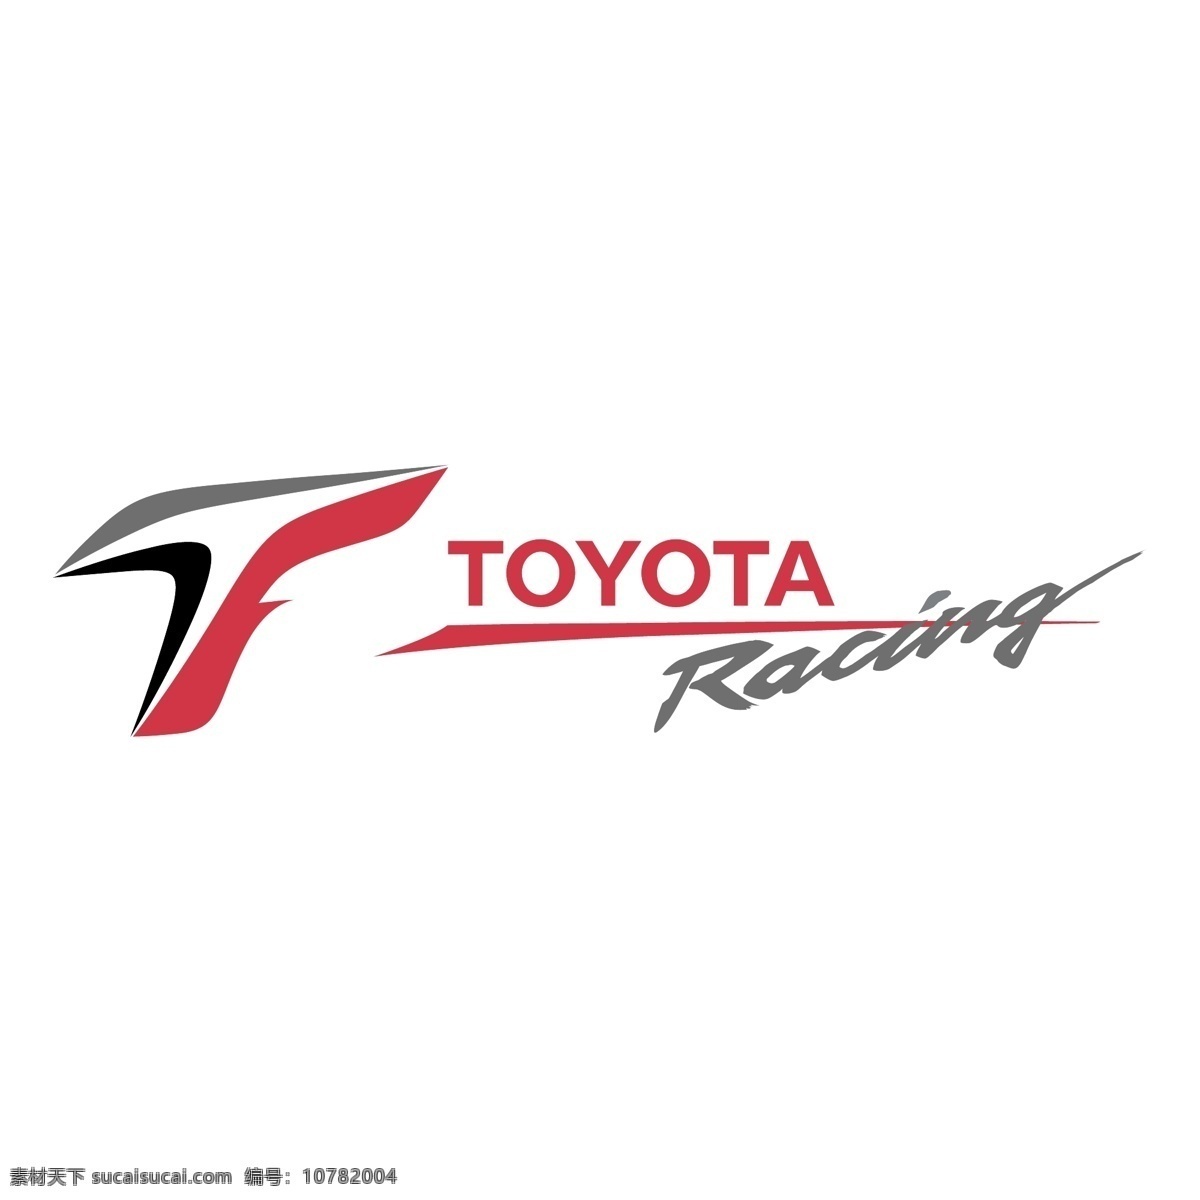 丰田 赛车 免费 标识 psd源文件 logo设计